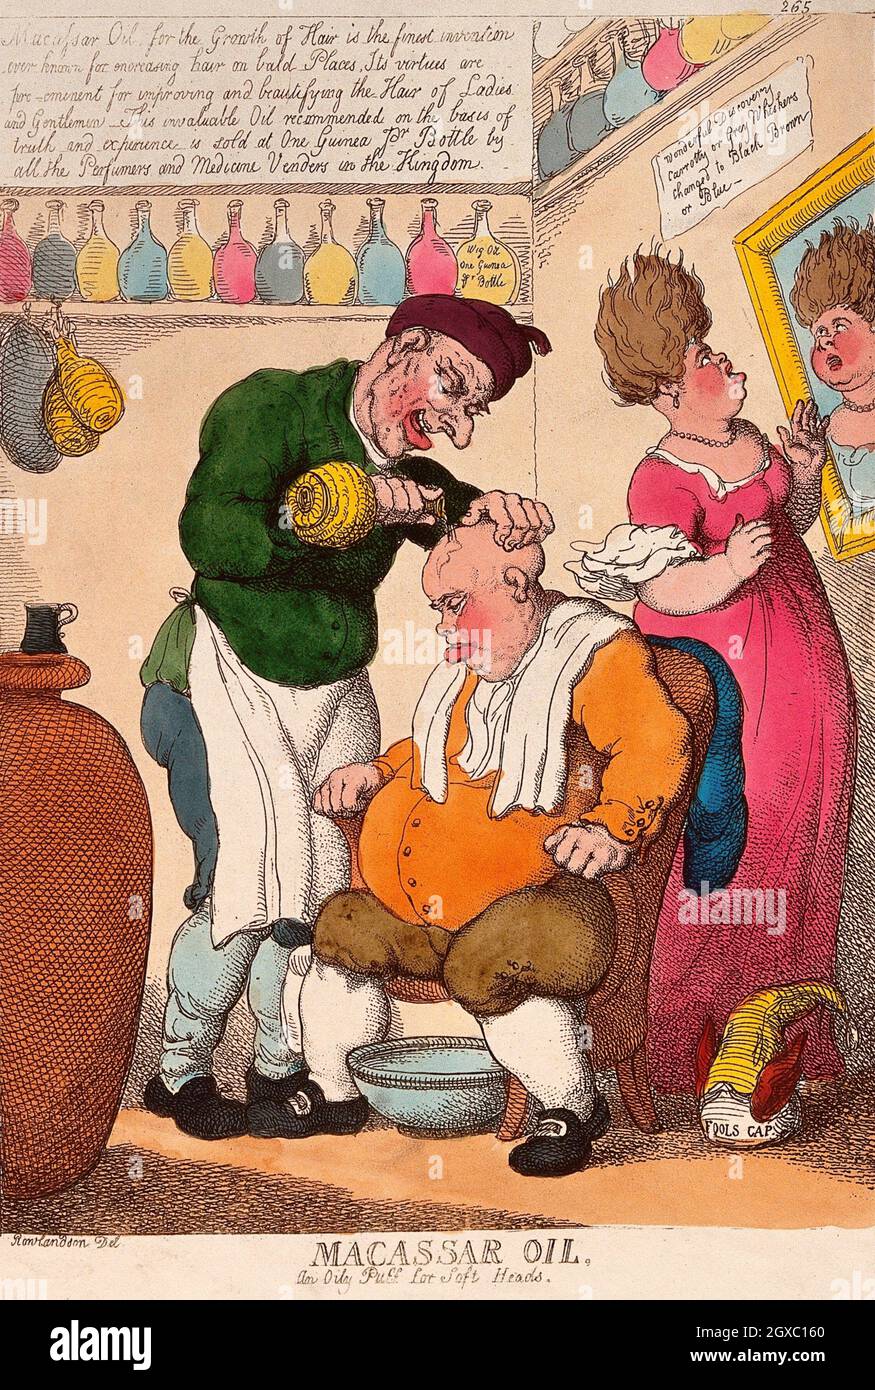 Ein übergewichtiger, kahlköpfiger alter Mann sitzt in einem Sessel, während ein Friseur Makassaröl aus einer Flasche auf seine Kopfhaut gießt. T. Rowlandson, ca. 1814. At Stockfoto